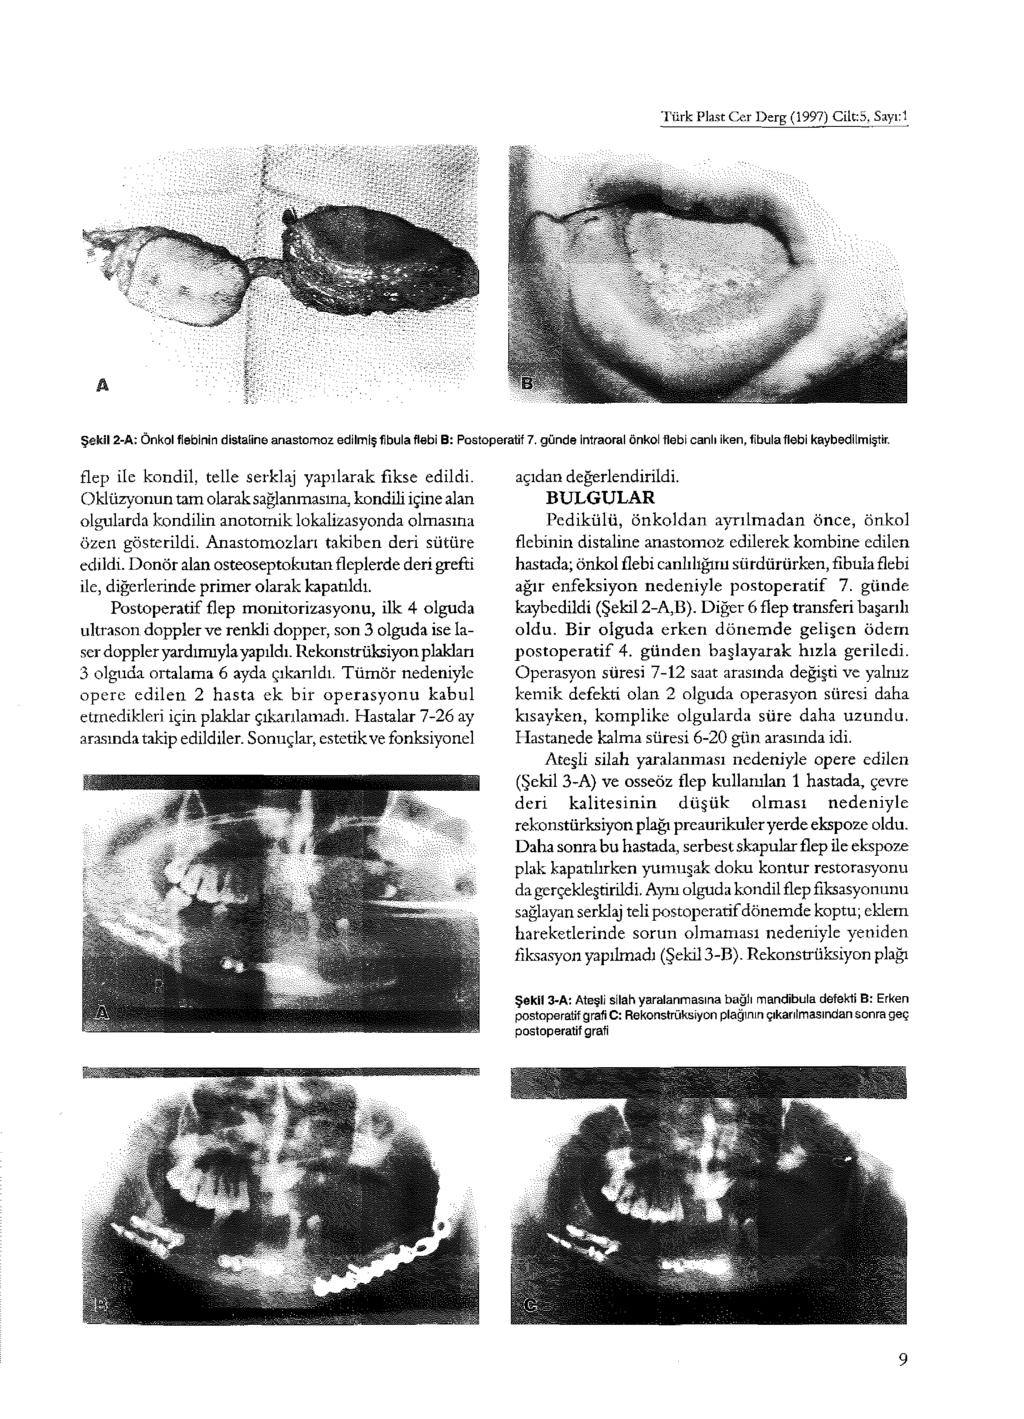 Türk Plast Cer Derg (1997) Cilt: 5, Sayı:l Şekil 2-A: Önkol fiebinin distaline anastomoz edilmiş fibula flebi B: Postoperatif 7. günde intraoral önkol flebi canlı iken, fibulaflebi kaybedilmiştir.